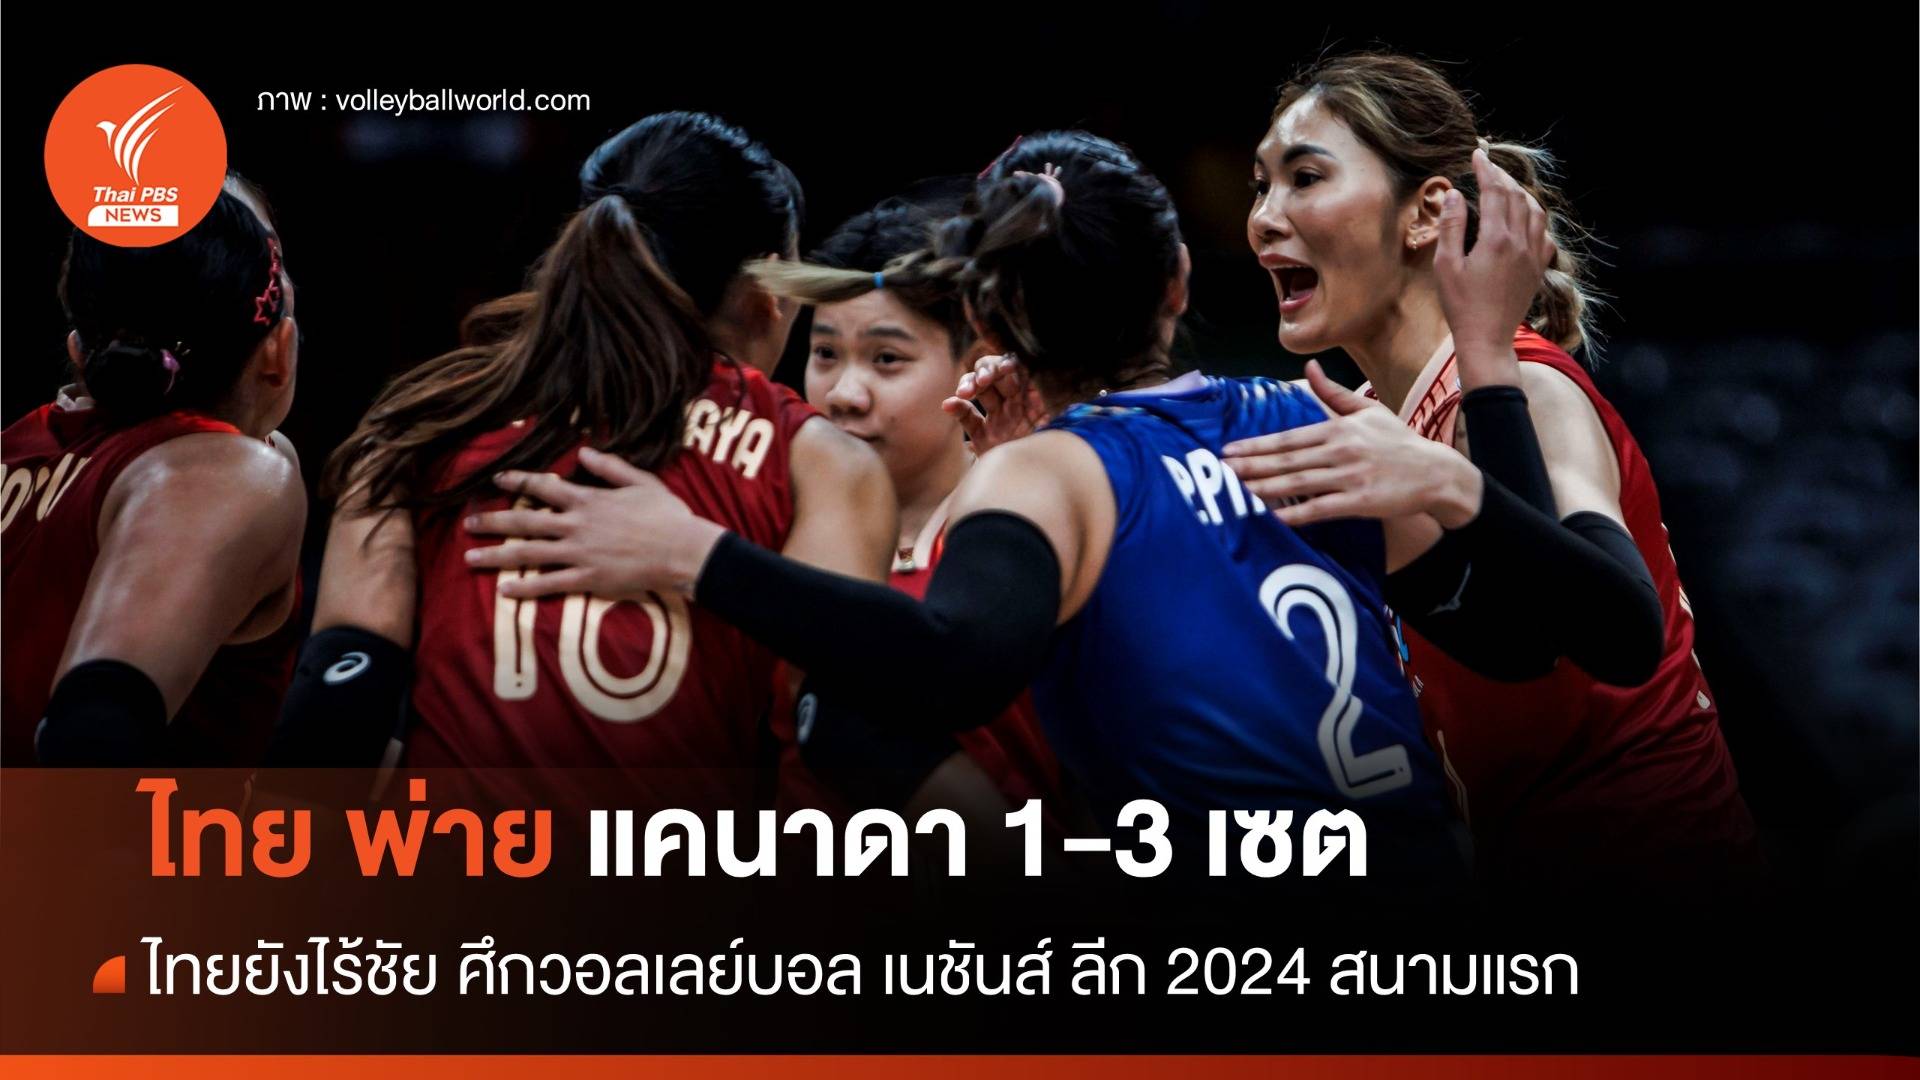 วอลเลย์บอลหญิงไทย พ่าย แคนาดา 1-3 เซต นัด 3 ศึกเนชันส์ ลีก 2024